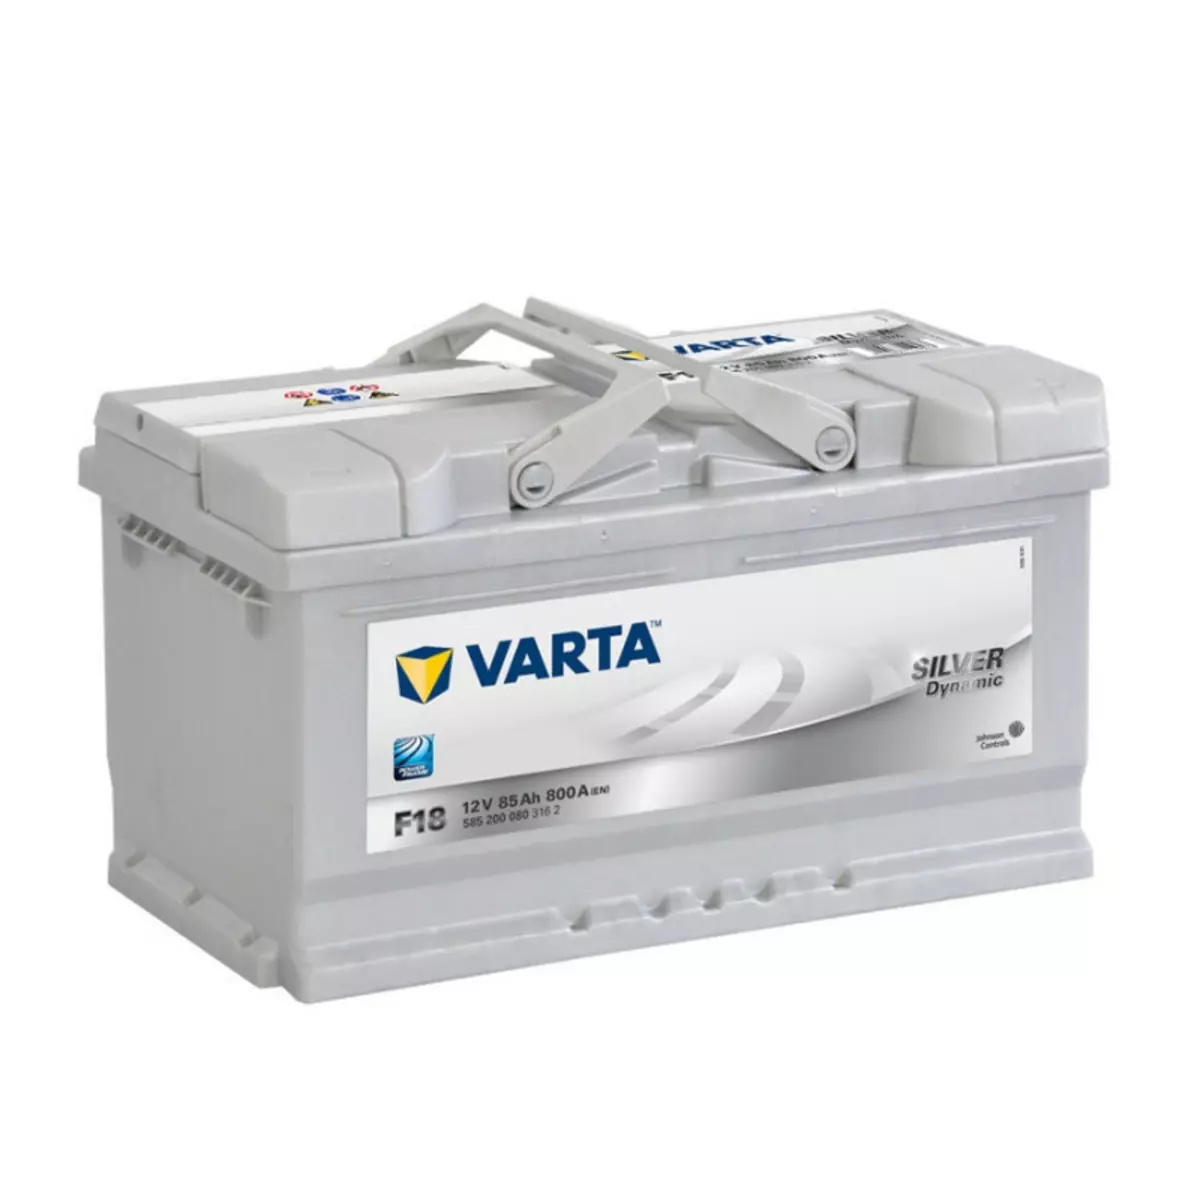 Varta Batterie Varta Silver Dynamic F18 12v 85ah 800A 585 200 080